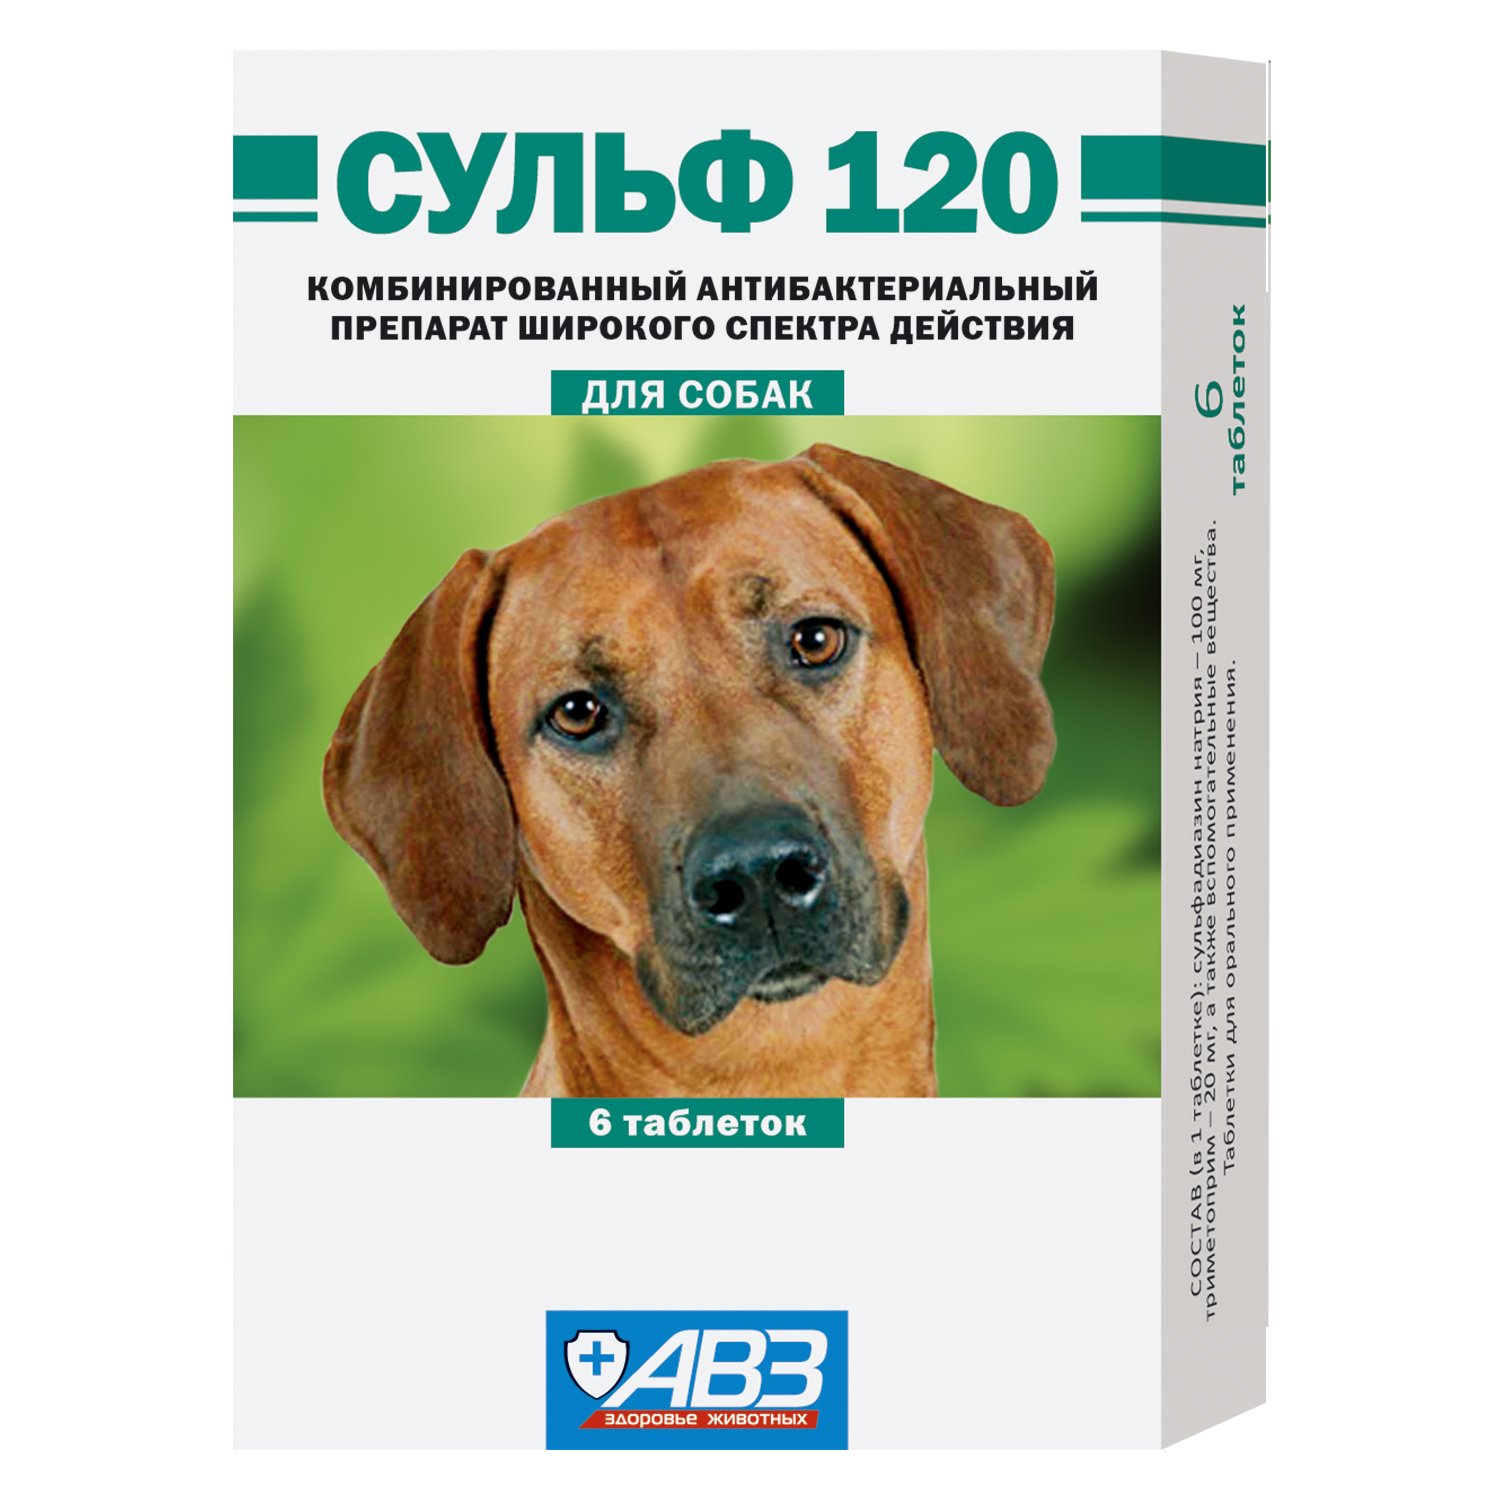 Препарат антибактериальный для собак АВЗ Сульф 120 6таблеток - фото 1